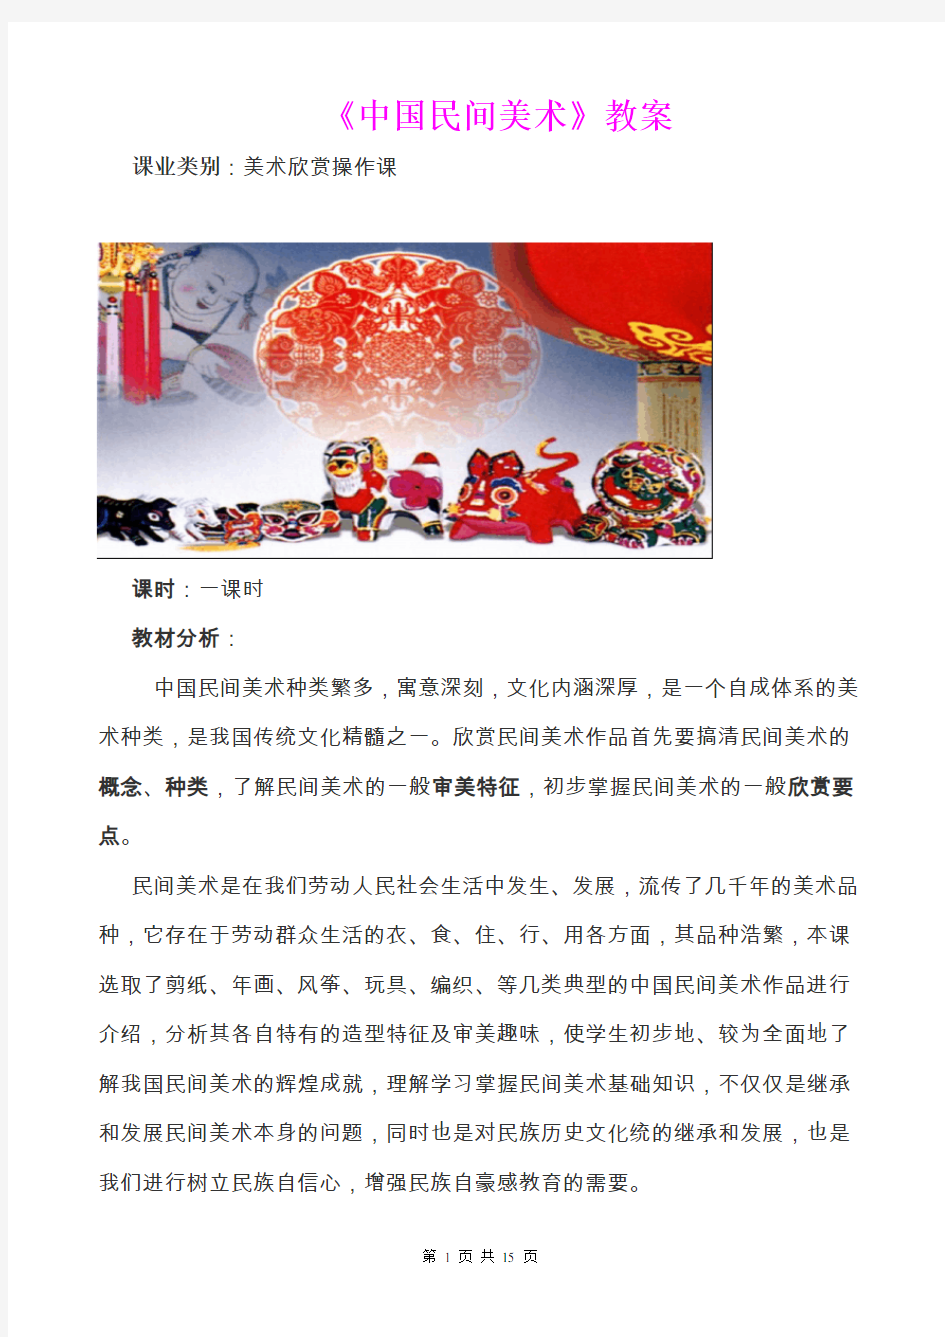 中国民间美术省优质课比赛一等奖教案 精品